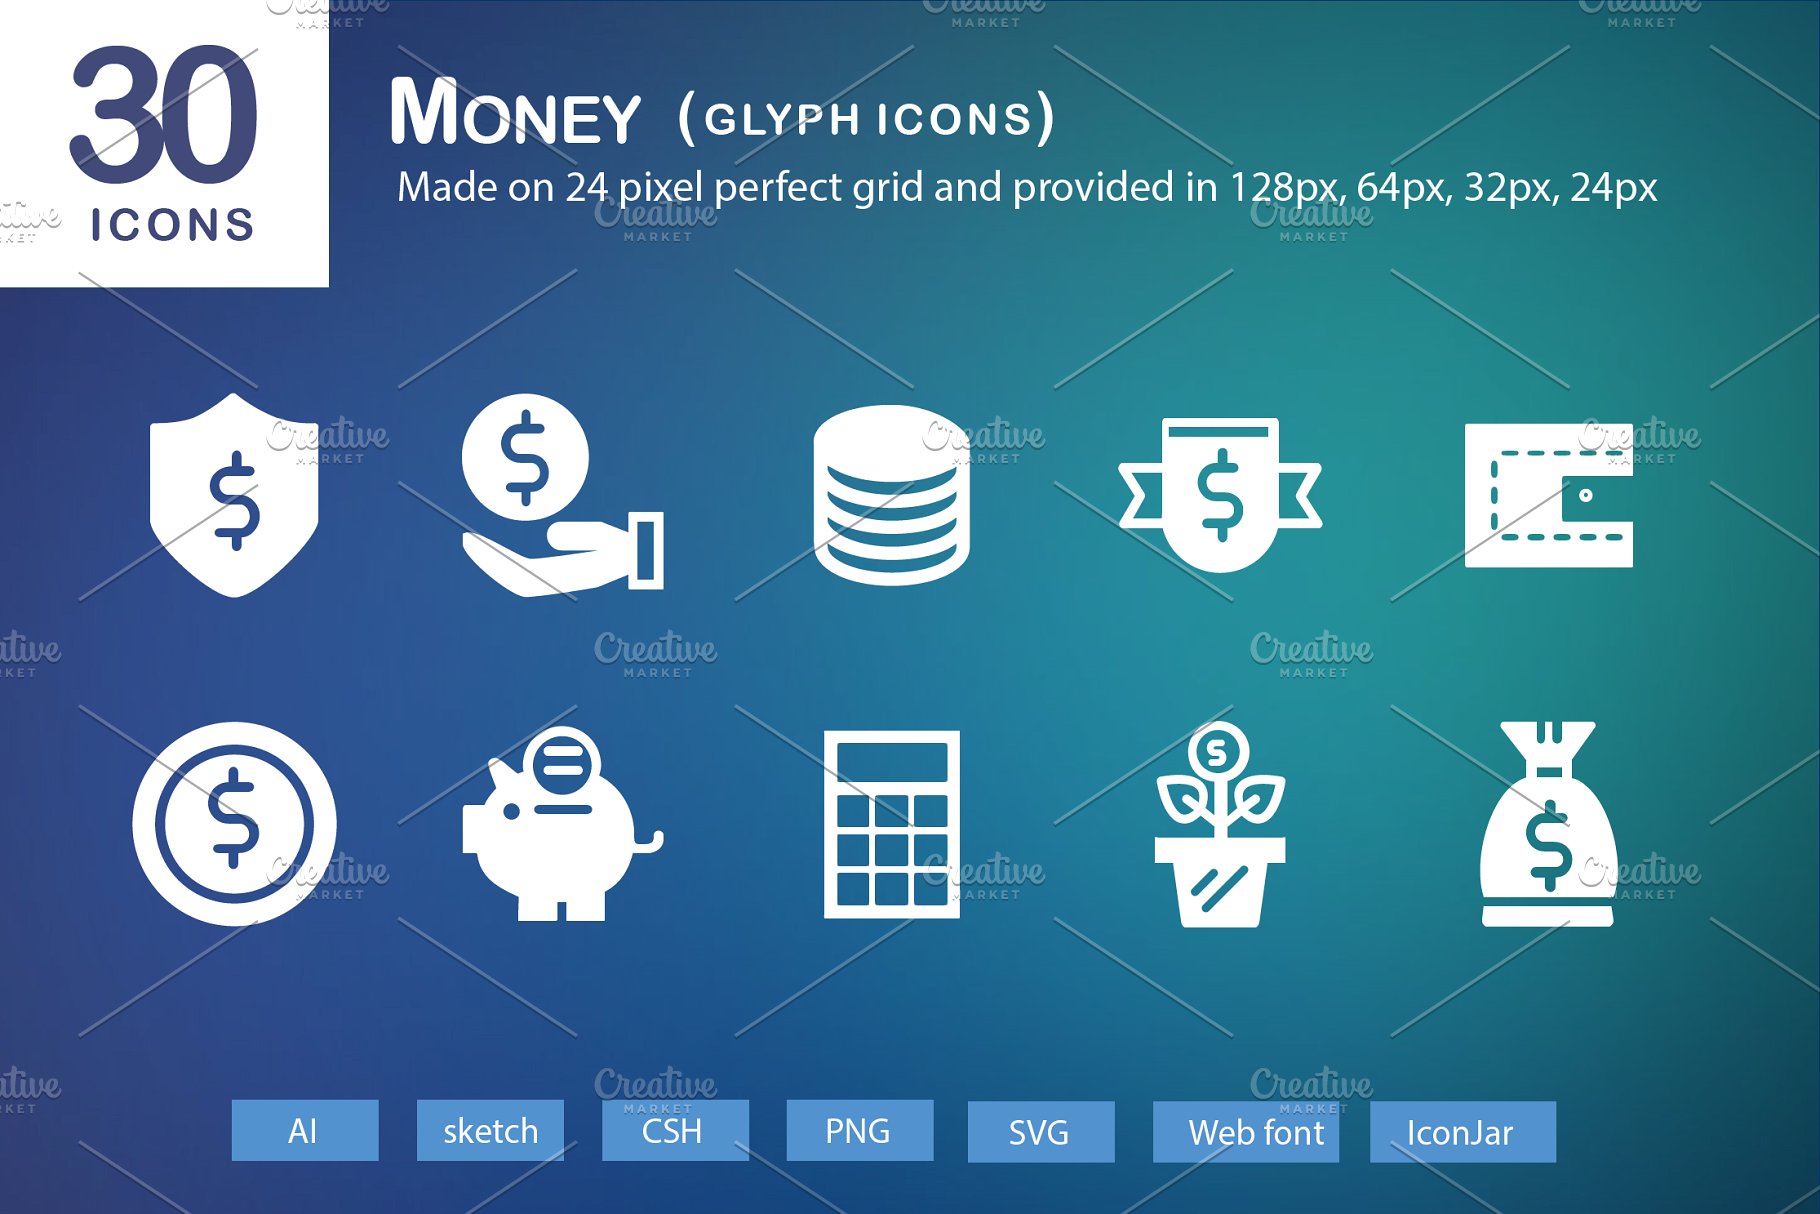 钱相关的图标 30 Money Glyph Icons #9